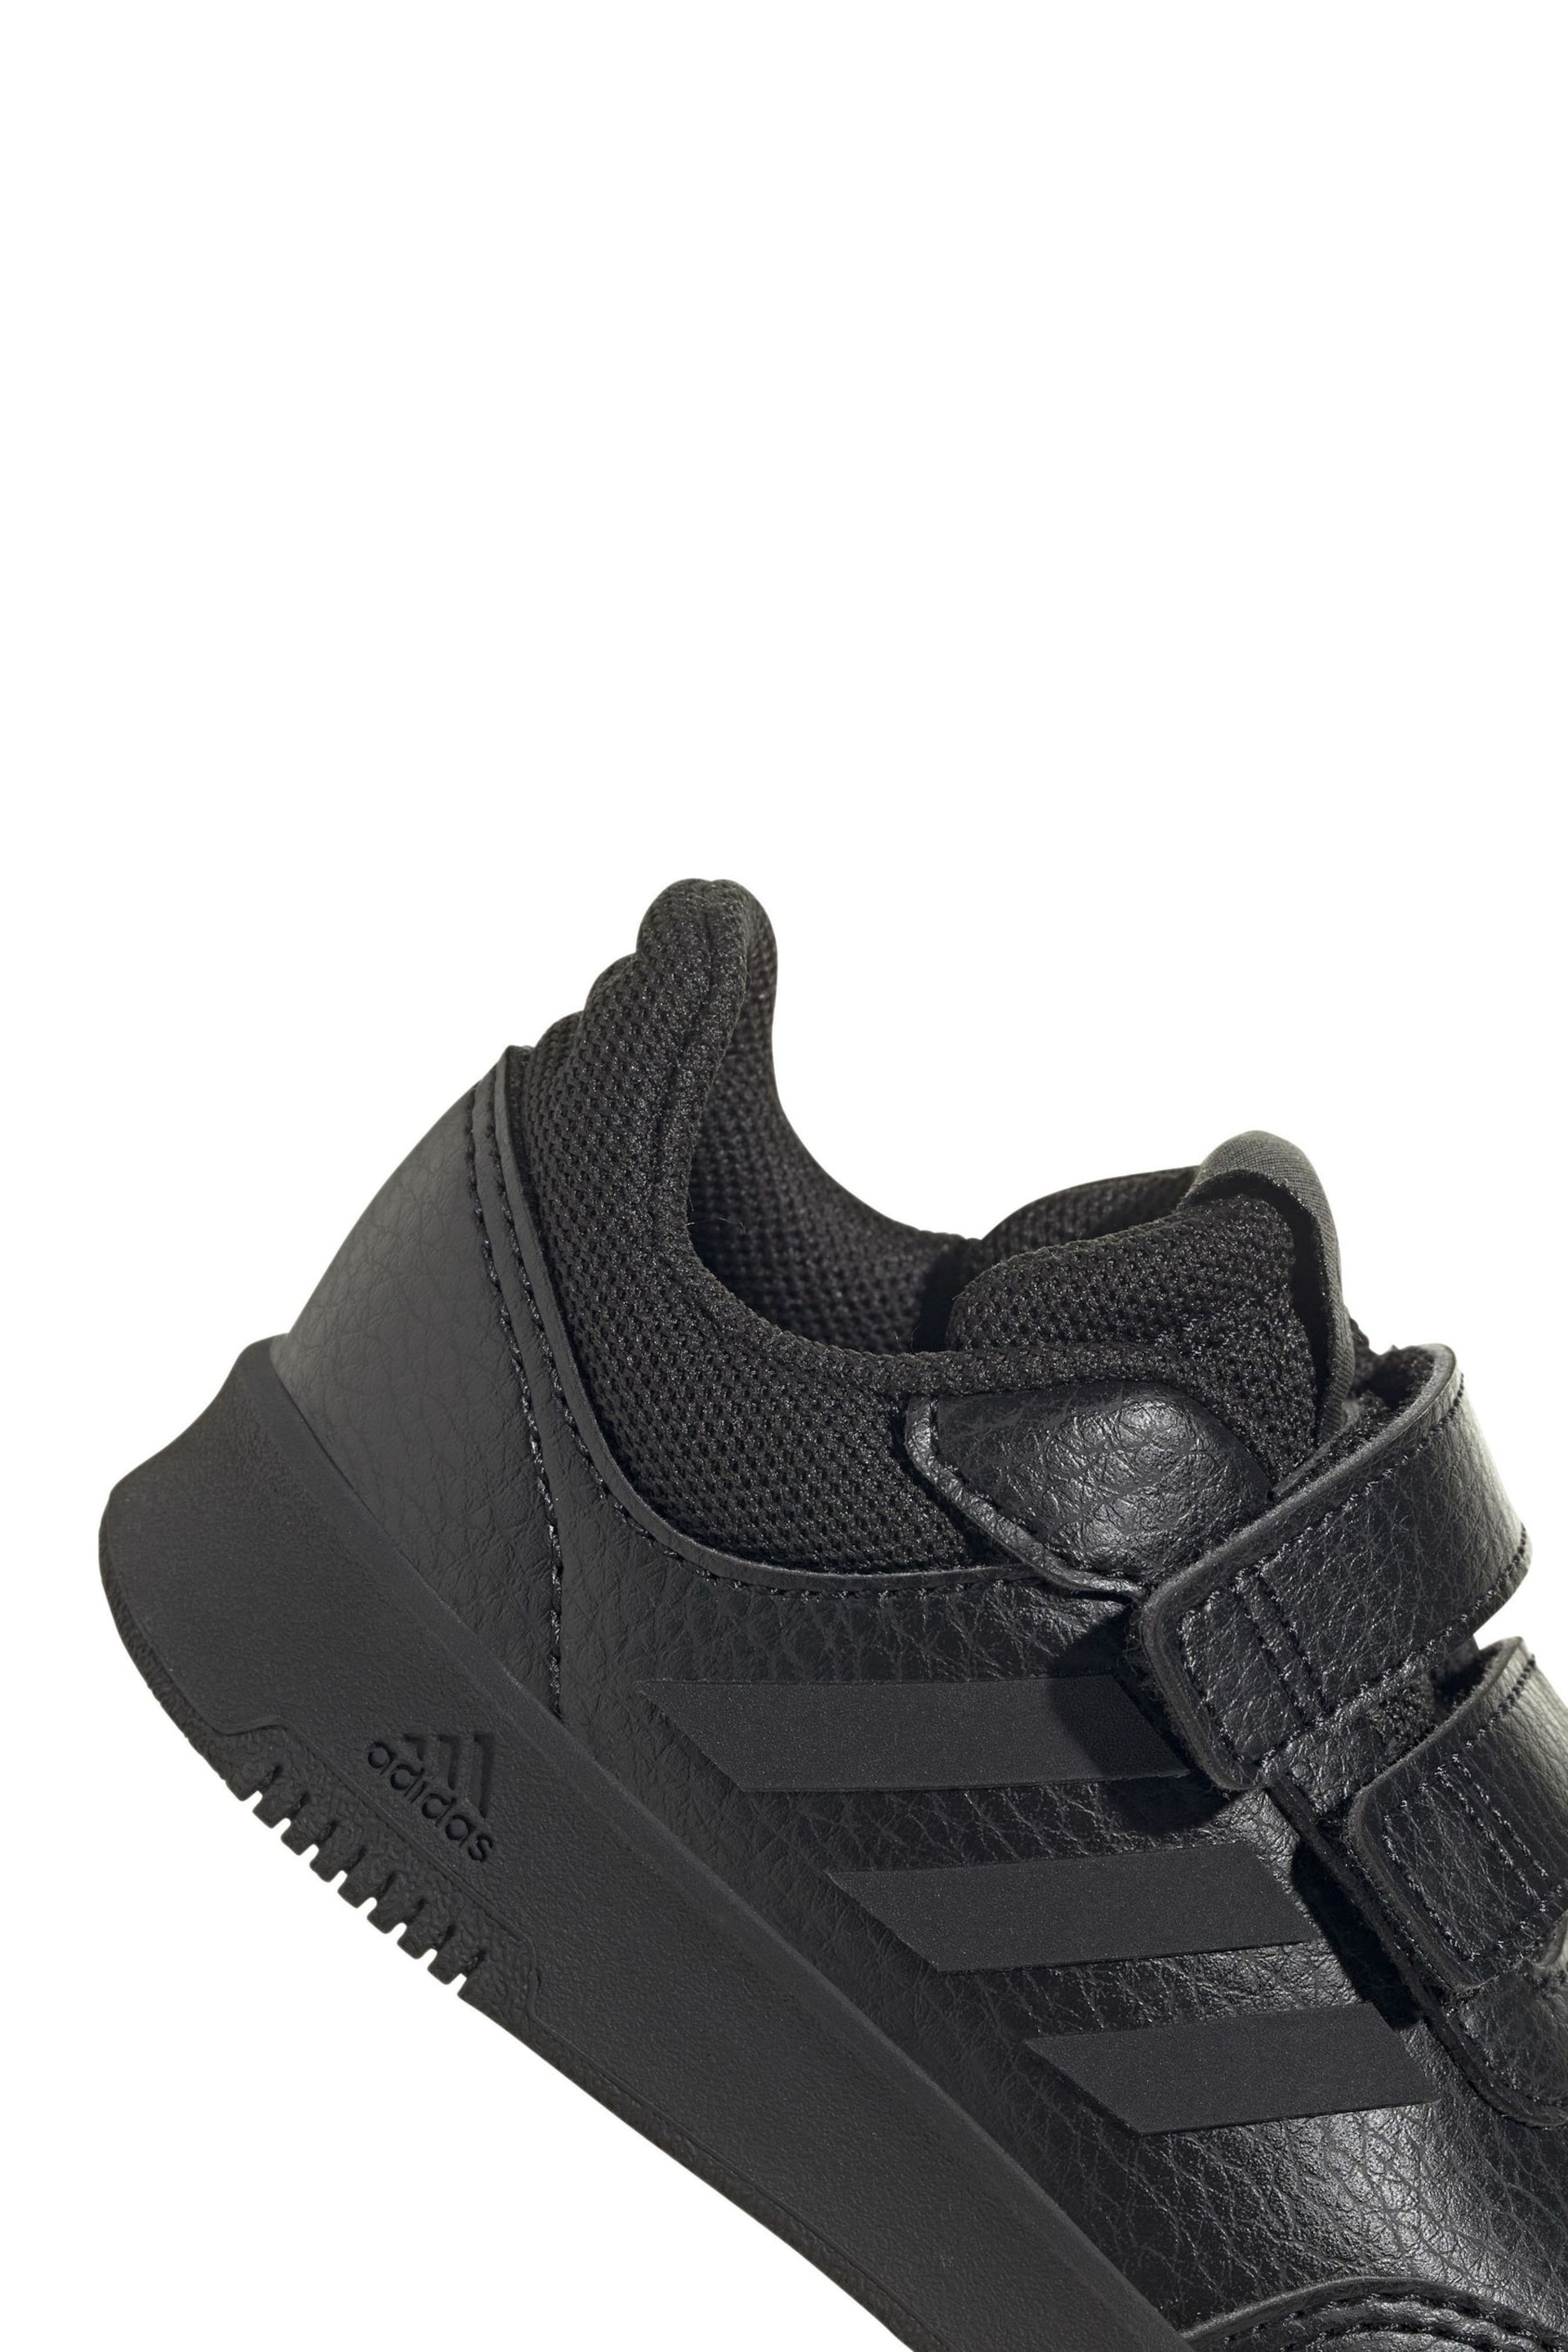 adidas Black Tensaur Hook and Loop Shoes - Image 8 of 8